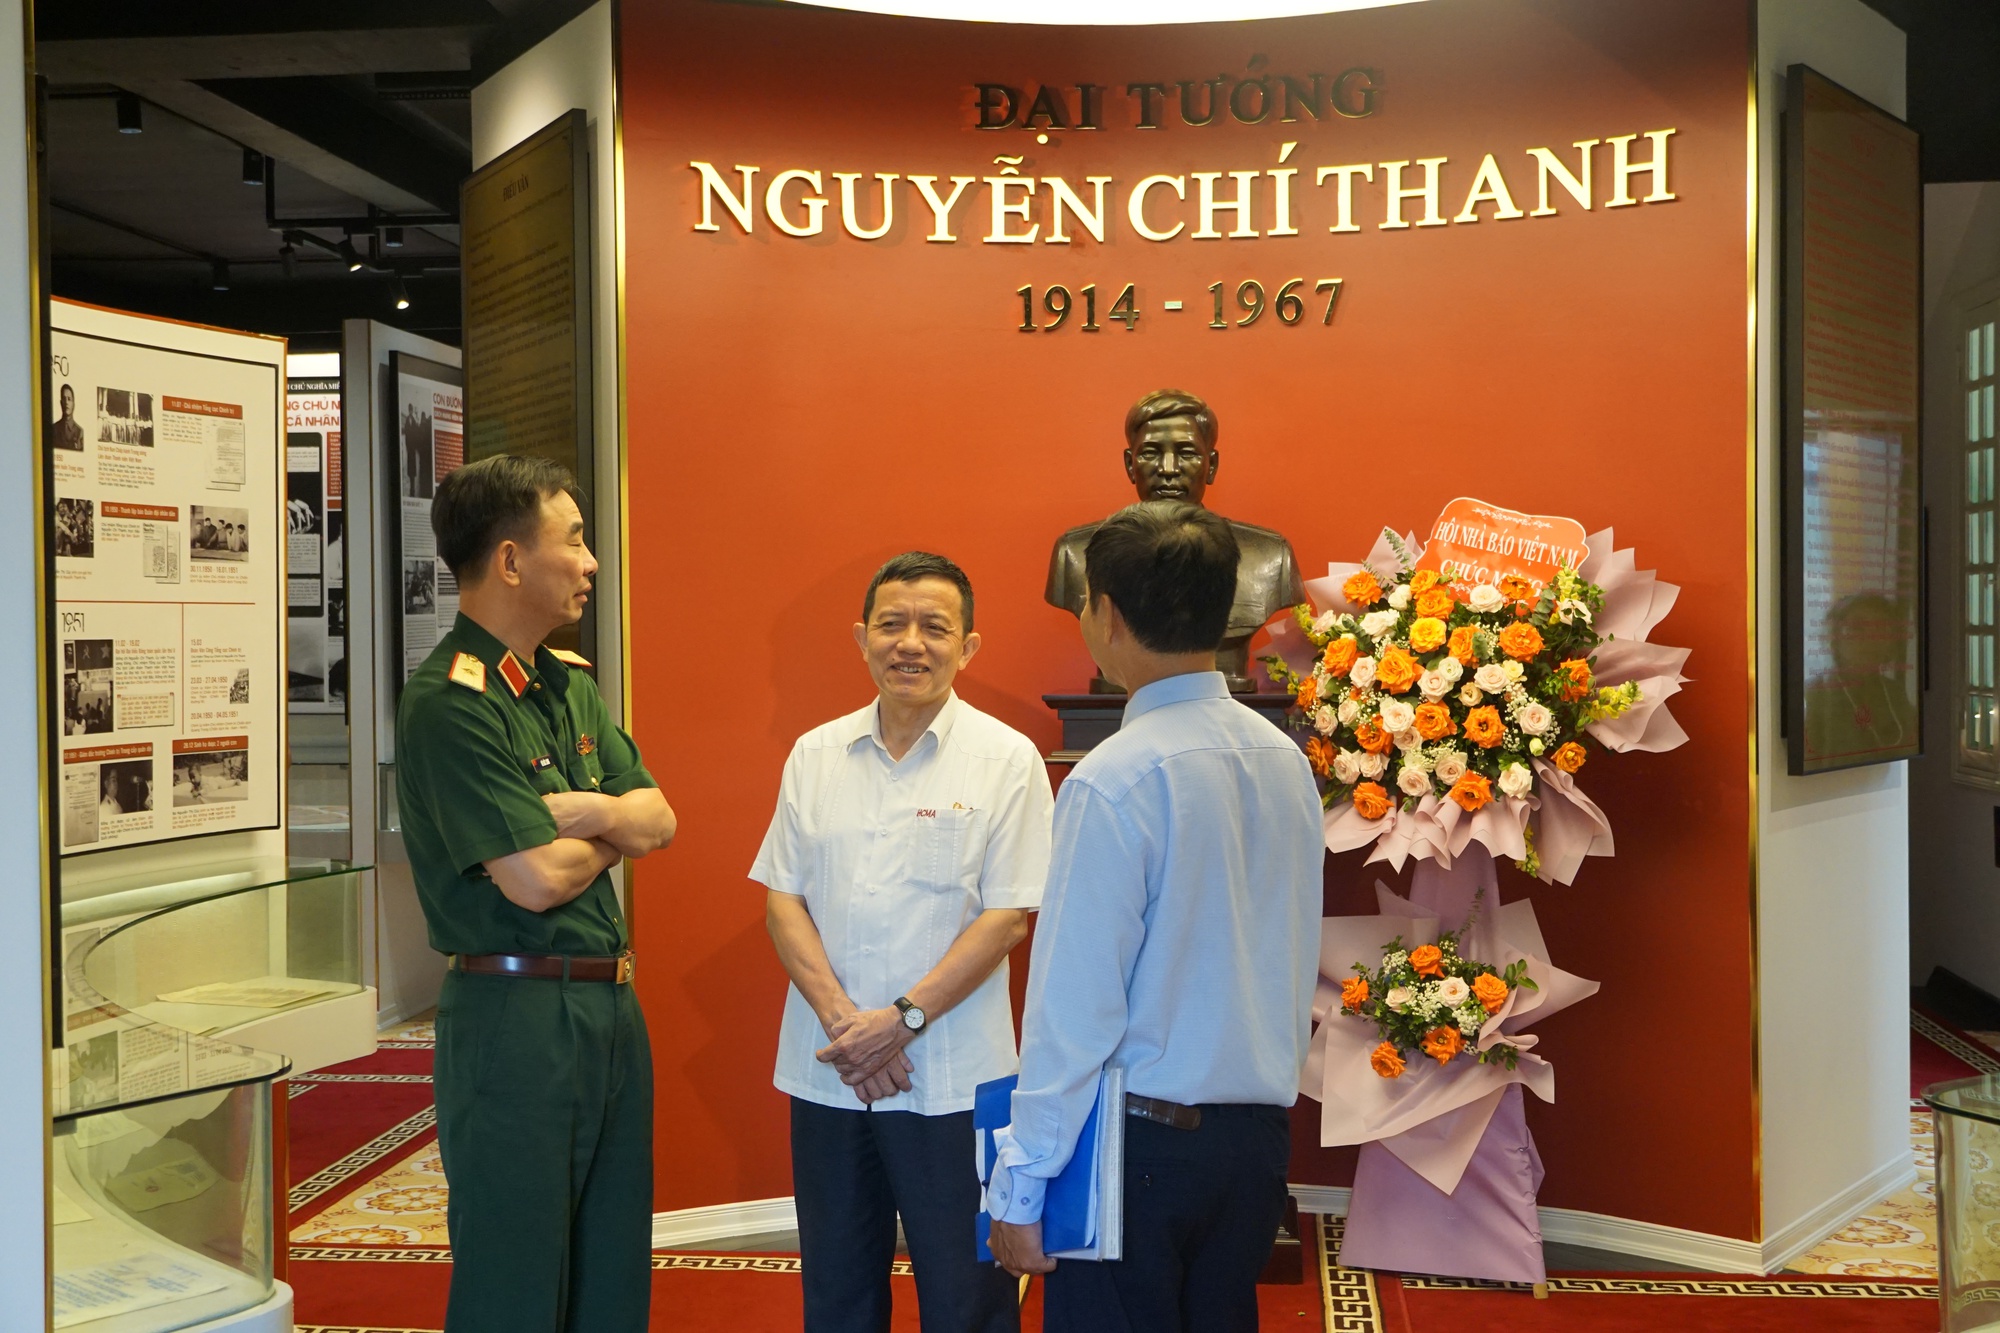 Bảo tàng Đại tướng Nguyễn Chí Thanh tại Hà Nội mở cửa đón khách tham quan thử nghiệm - Ảnh 2.